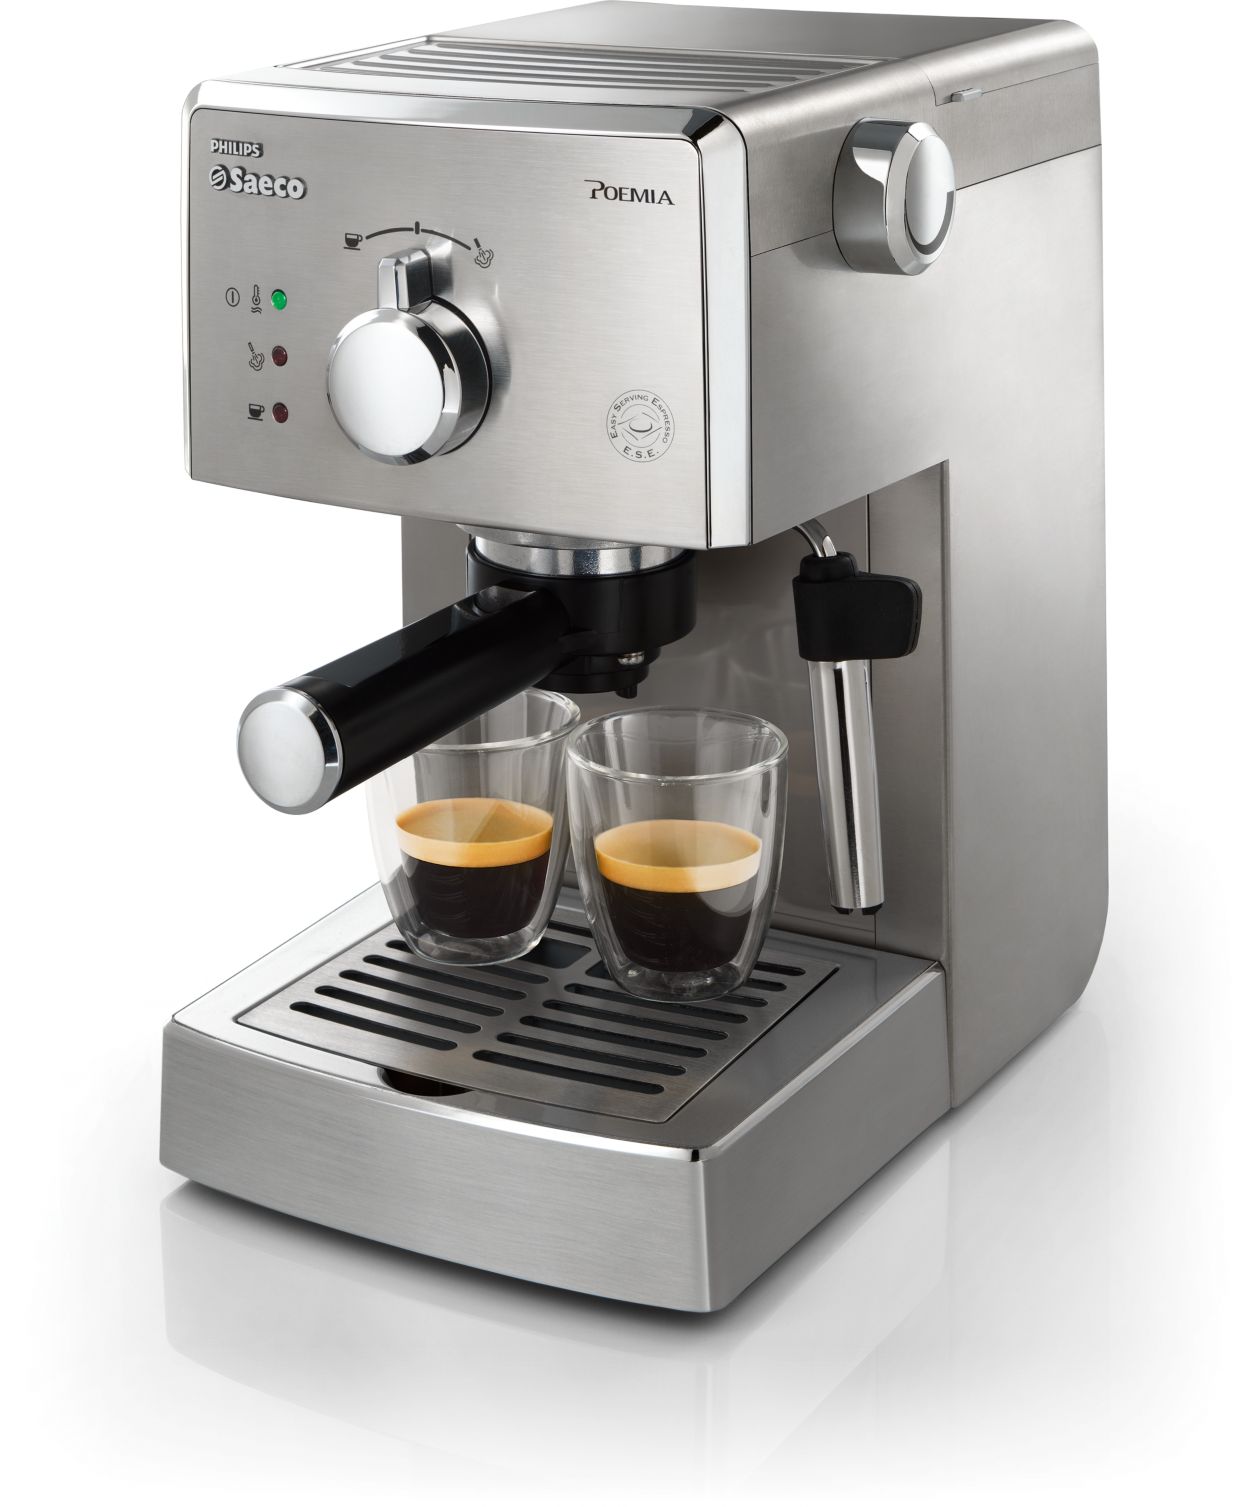 Manual Espresso machine